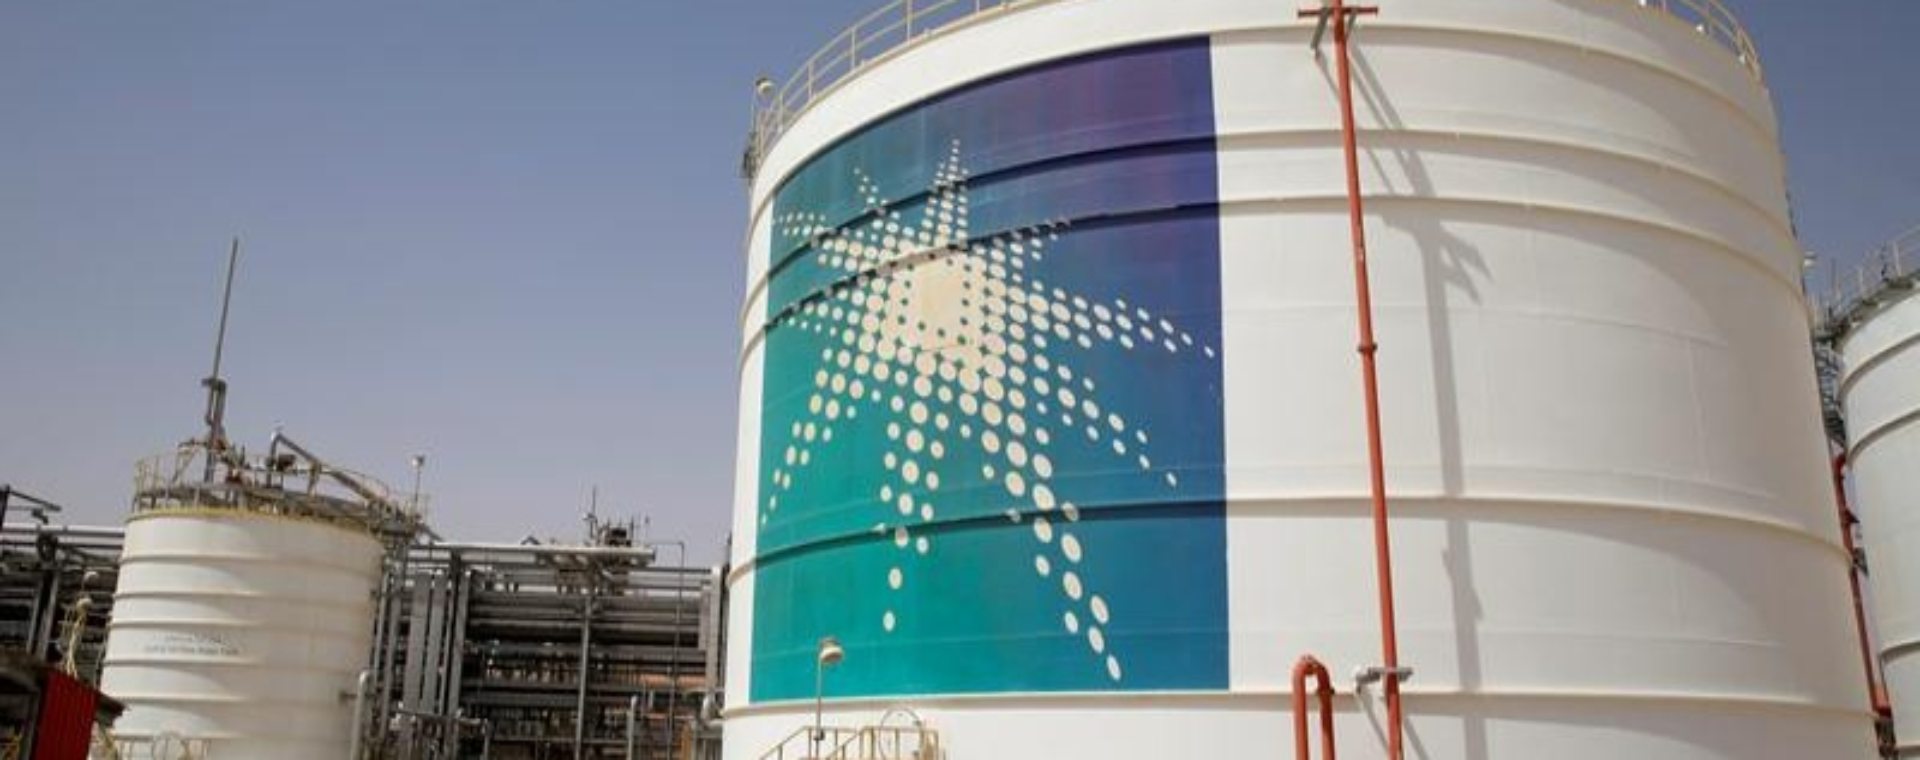 Tangki minyak Aramco terlihat di fasilitas produksi di ladang minyak Saudi Aramco di Shaybah, Arab Saudi, Selasa (22/5/2018). - Reuters Penolakan Raksasa Minyak Dunia di Kampanye Penurunan Emisi